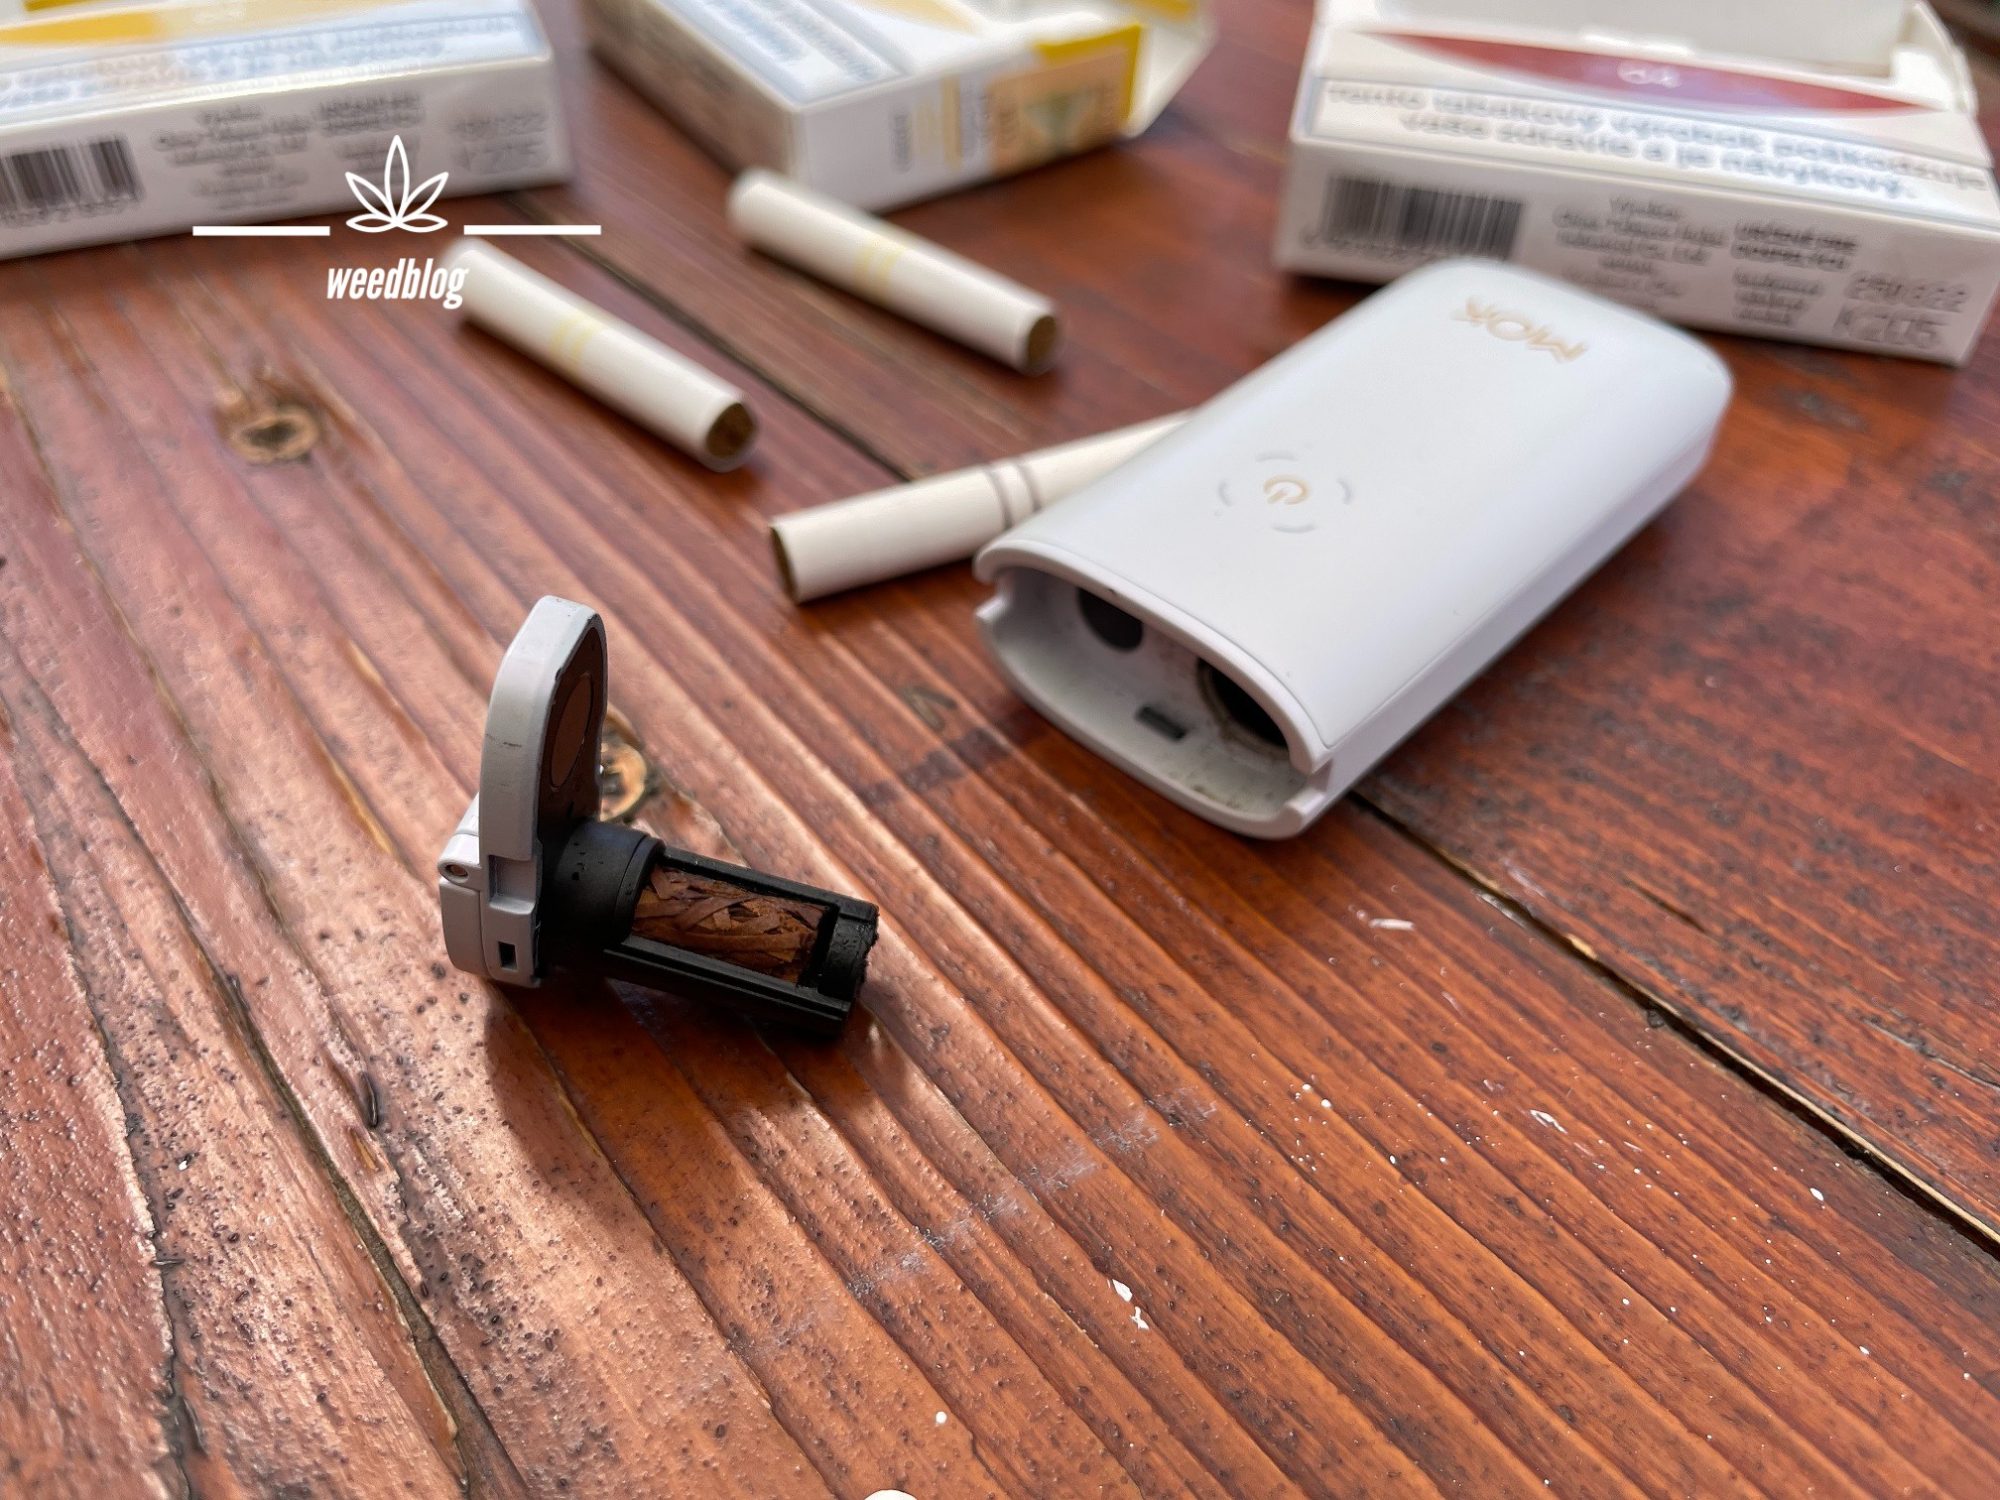 Tabakové náplne COO chladnú po nahrievaní v útrobách zariadenia, ktoré má kovový poklop